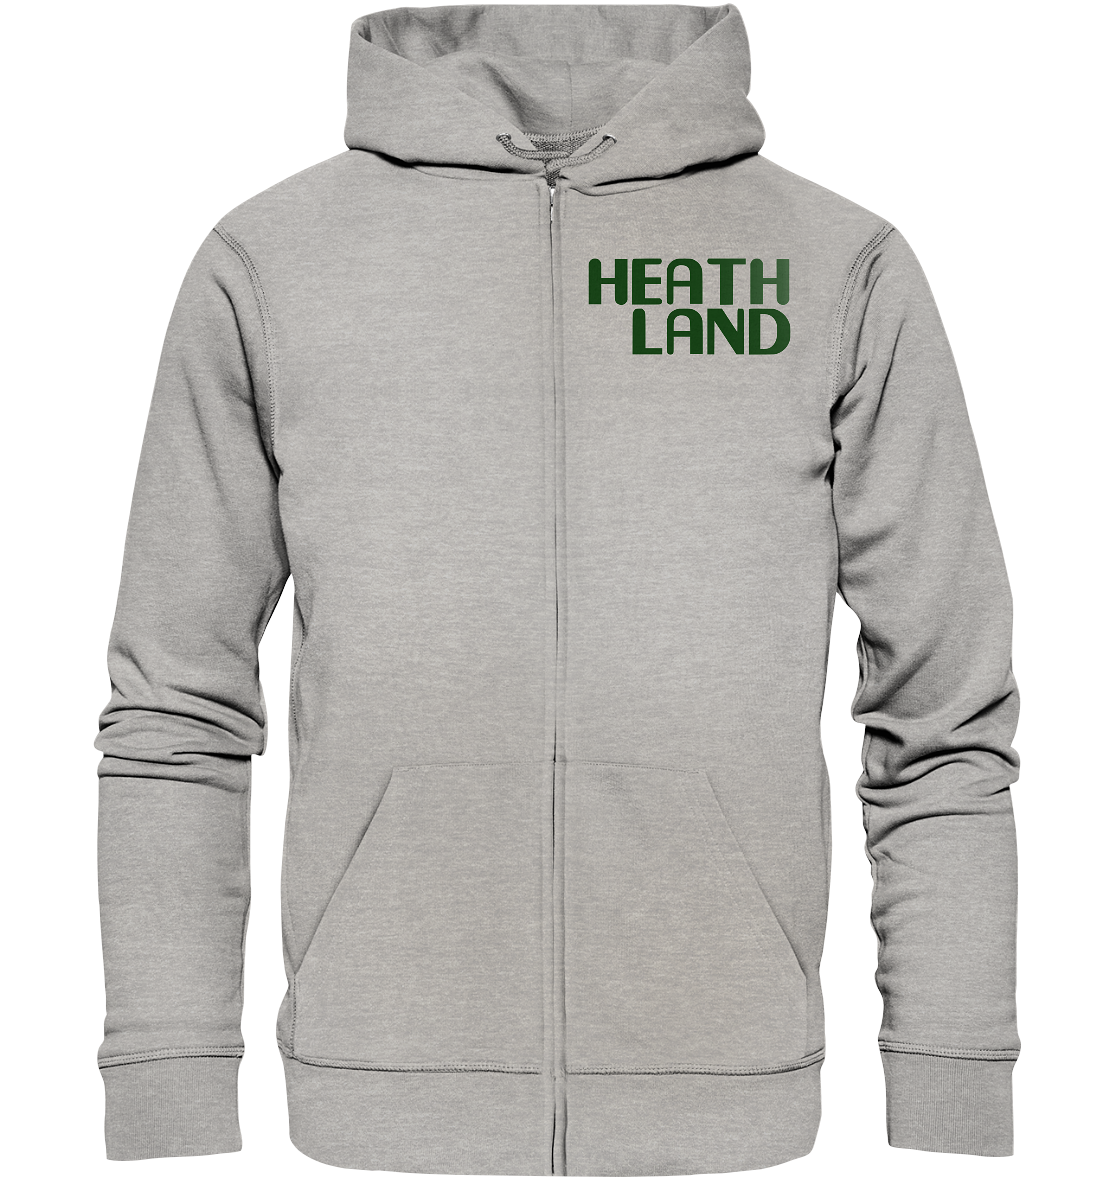 Green x Heathland - Organic Zipper